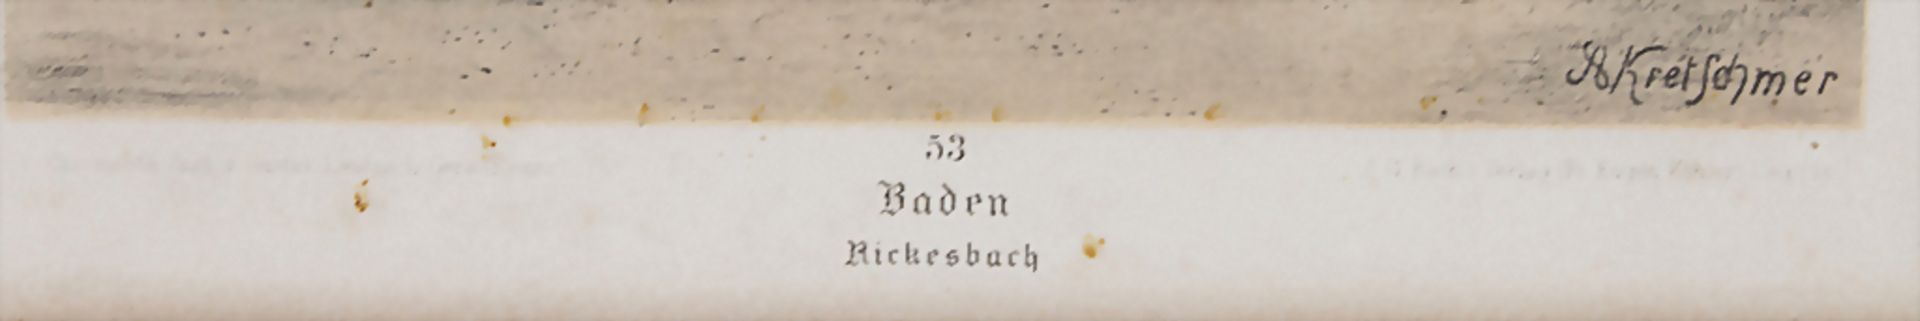 G. Leutzsch nach A. Kretschmer, Trachtenstudie 'Baden Rickesbach' / A study of traditional - Image 3 of 4